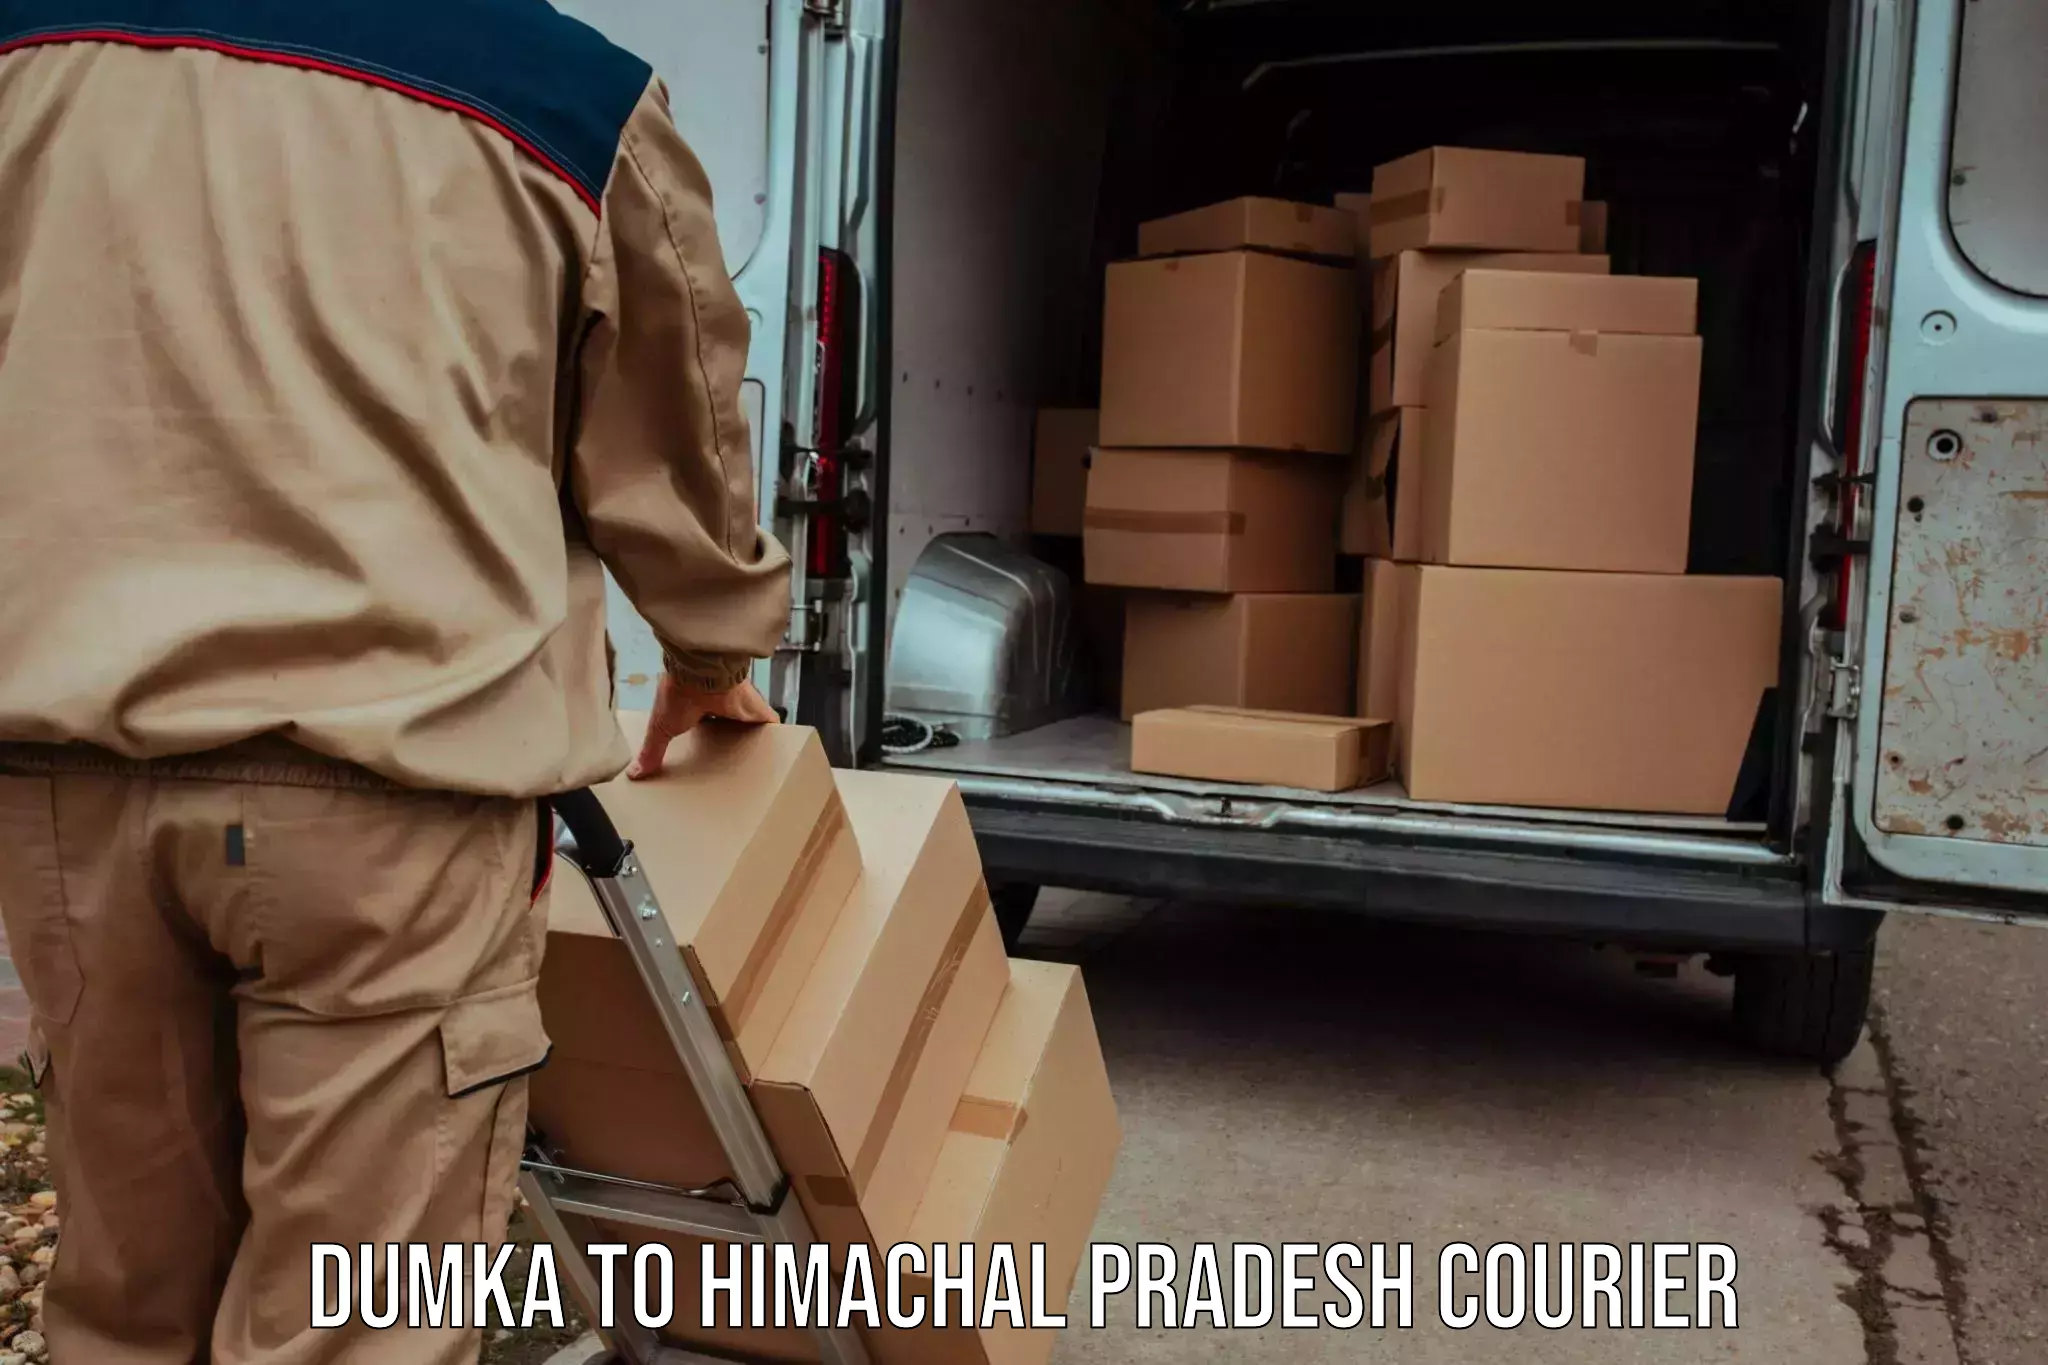 Versatile courier offerings Dumka to Dheera